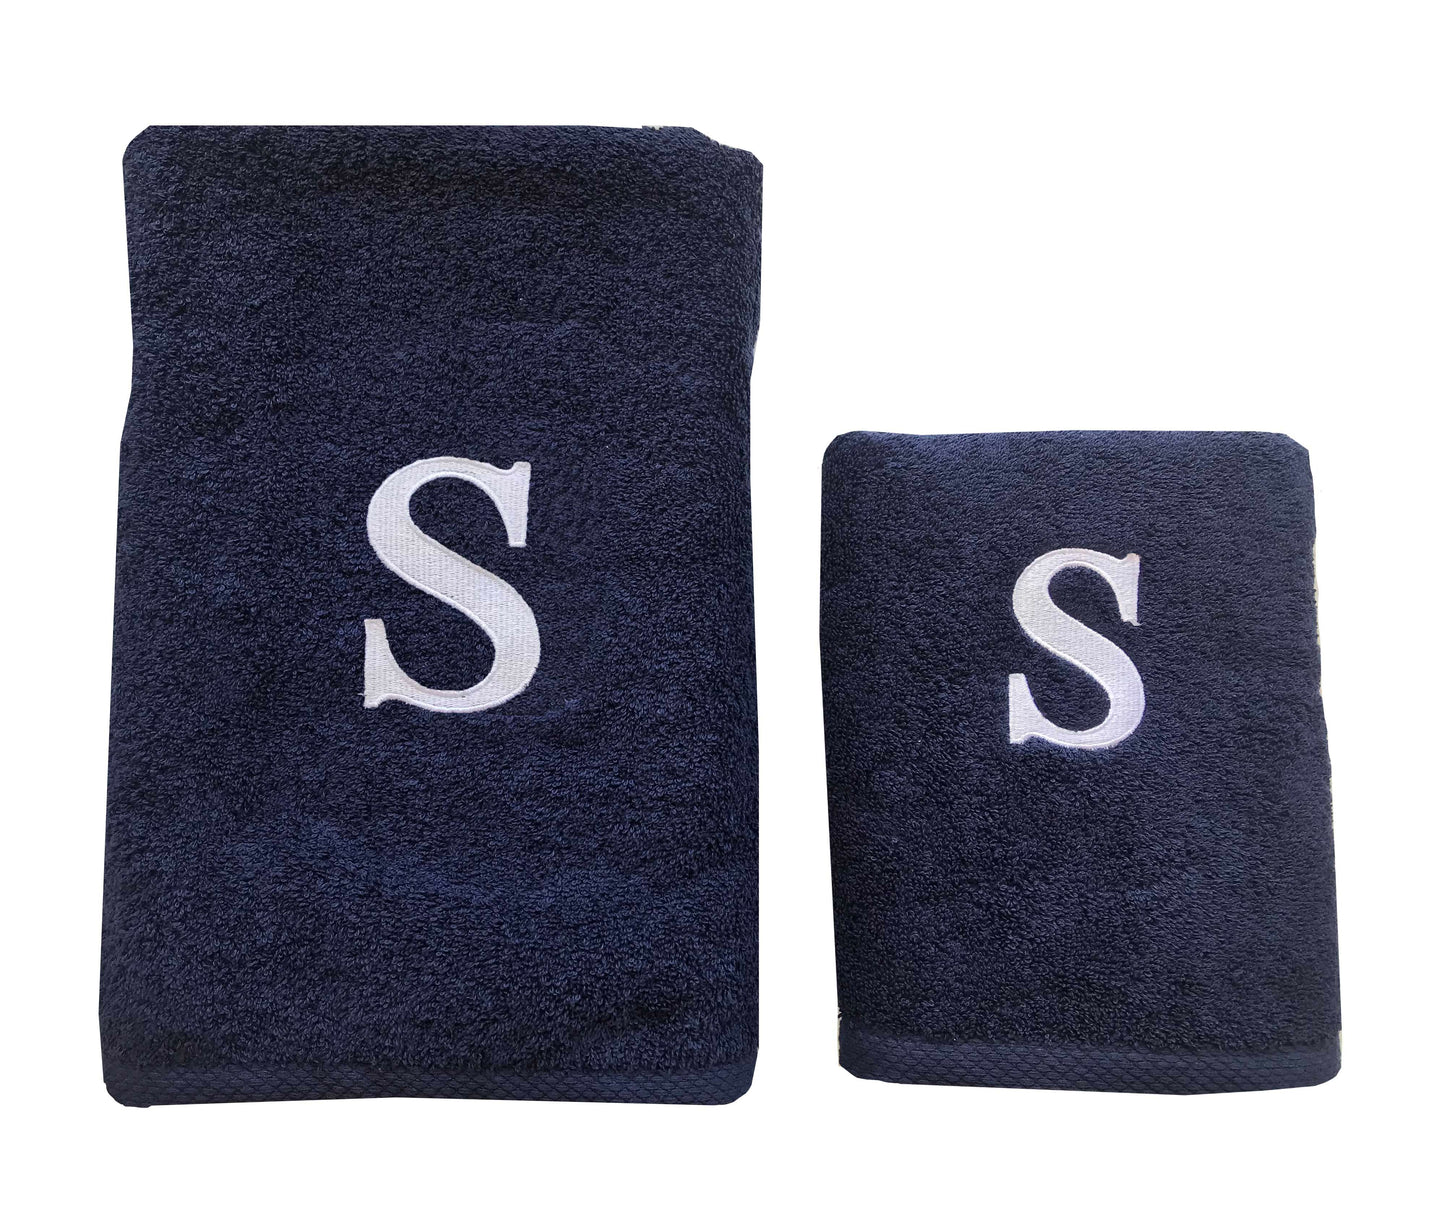 Premium Handtuch -  Mit edler Stickerei Buchstabe "S" - Vielseitig, Nachhaltig, Saugstark & Schnelltrocknend - 100% Baumwolle LMS-6642 Marinenblau